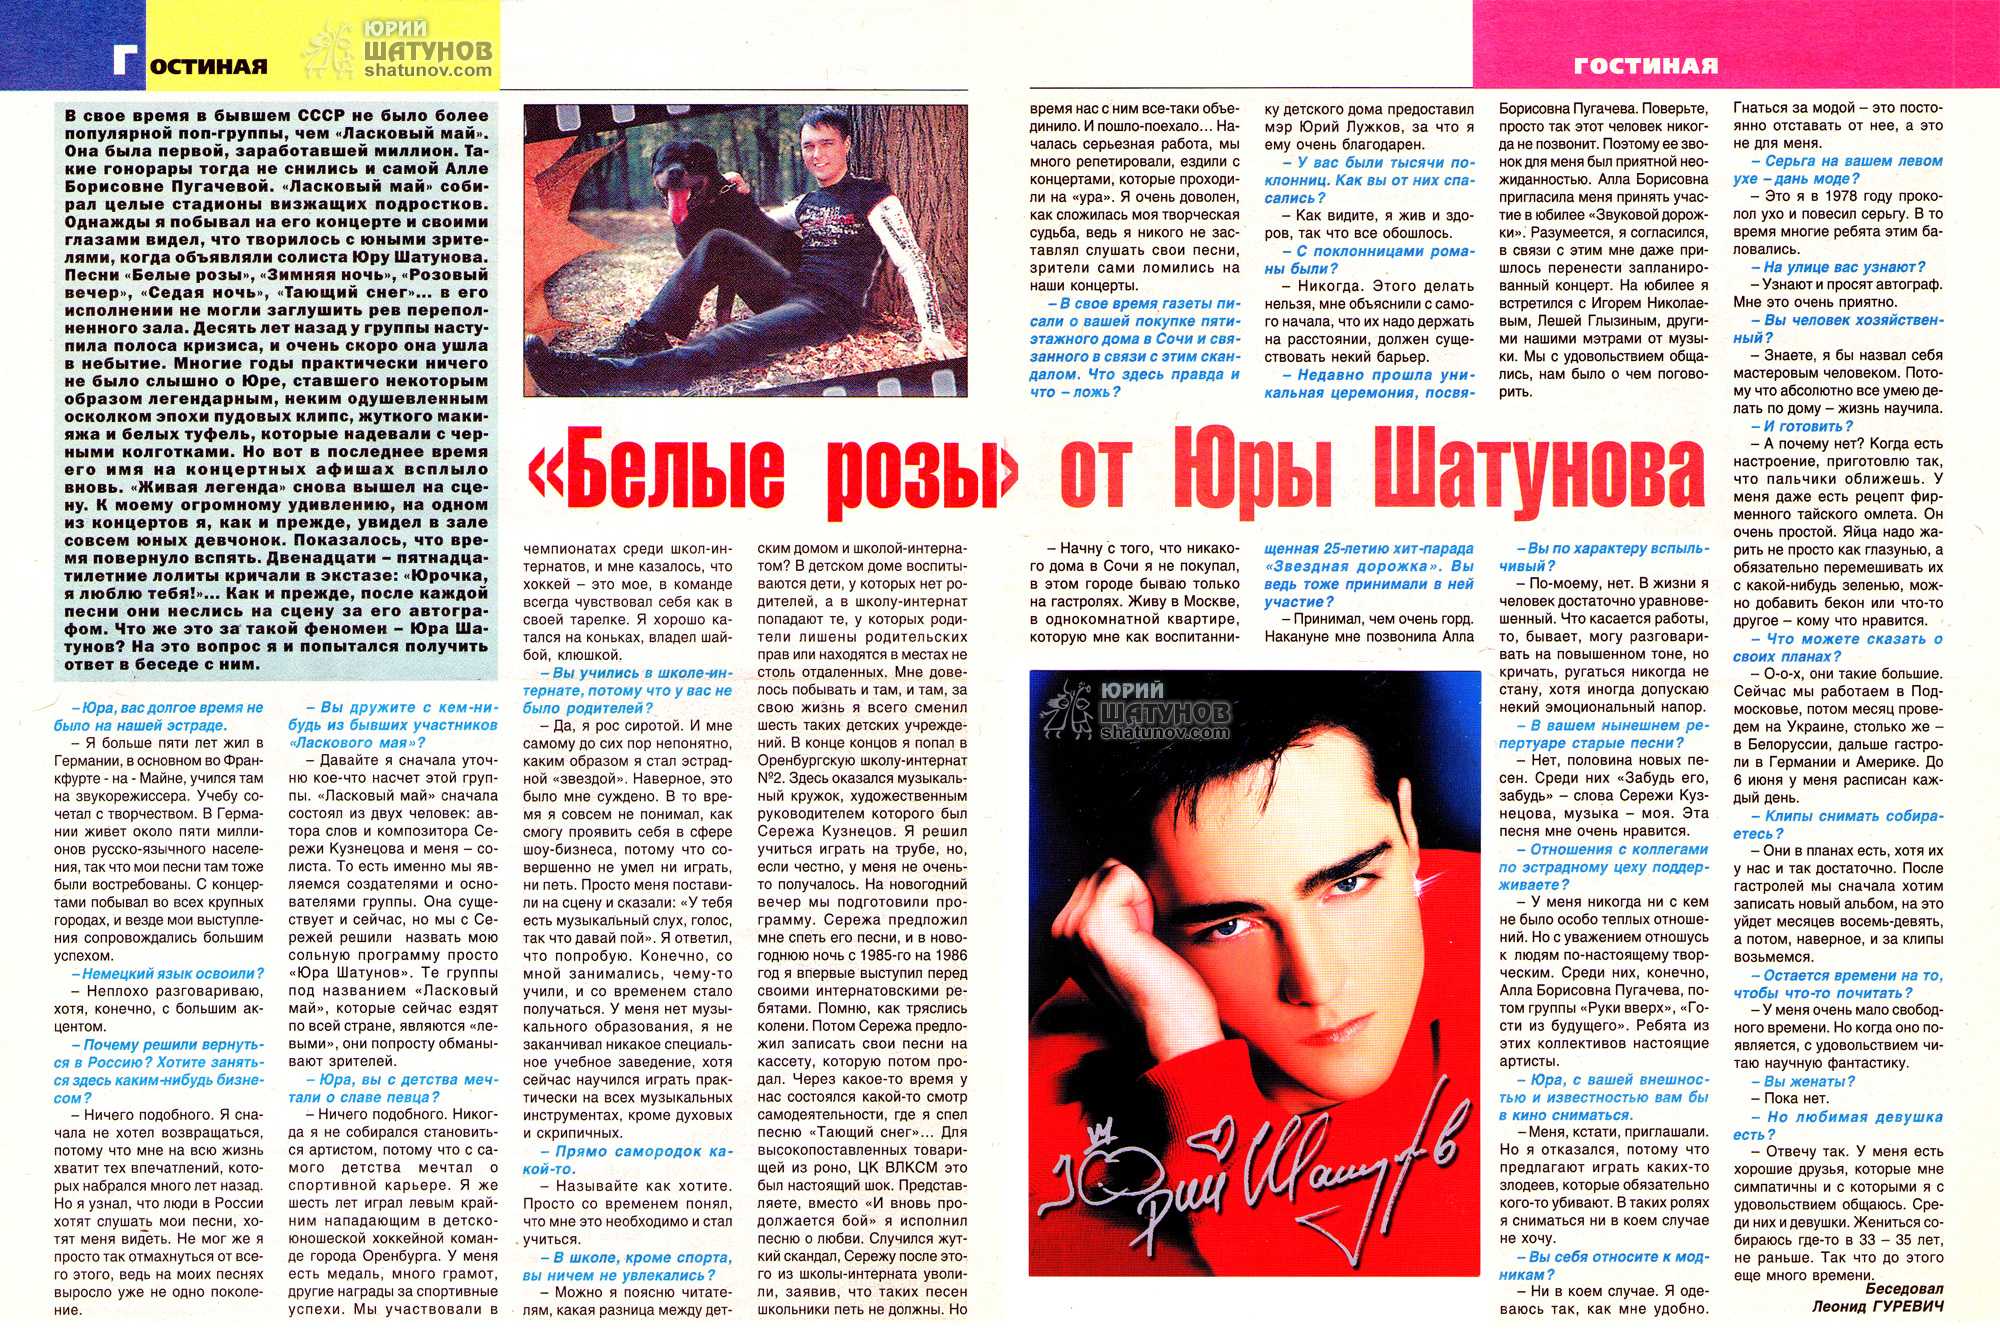 Песня про юрия текст. Шатунов журнал 1990. Шатунов журнал 1989.